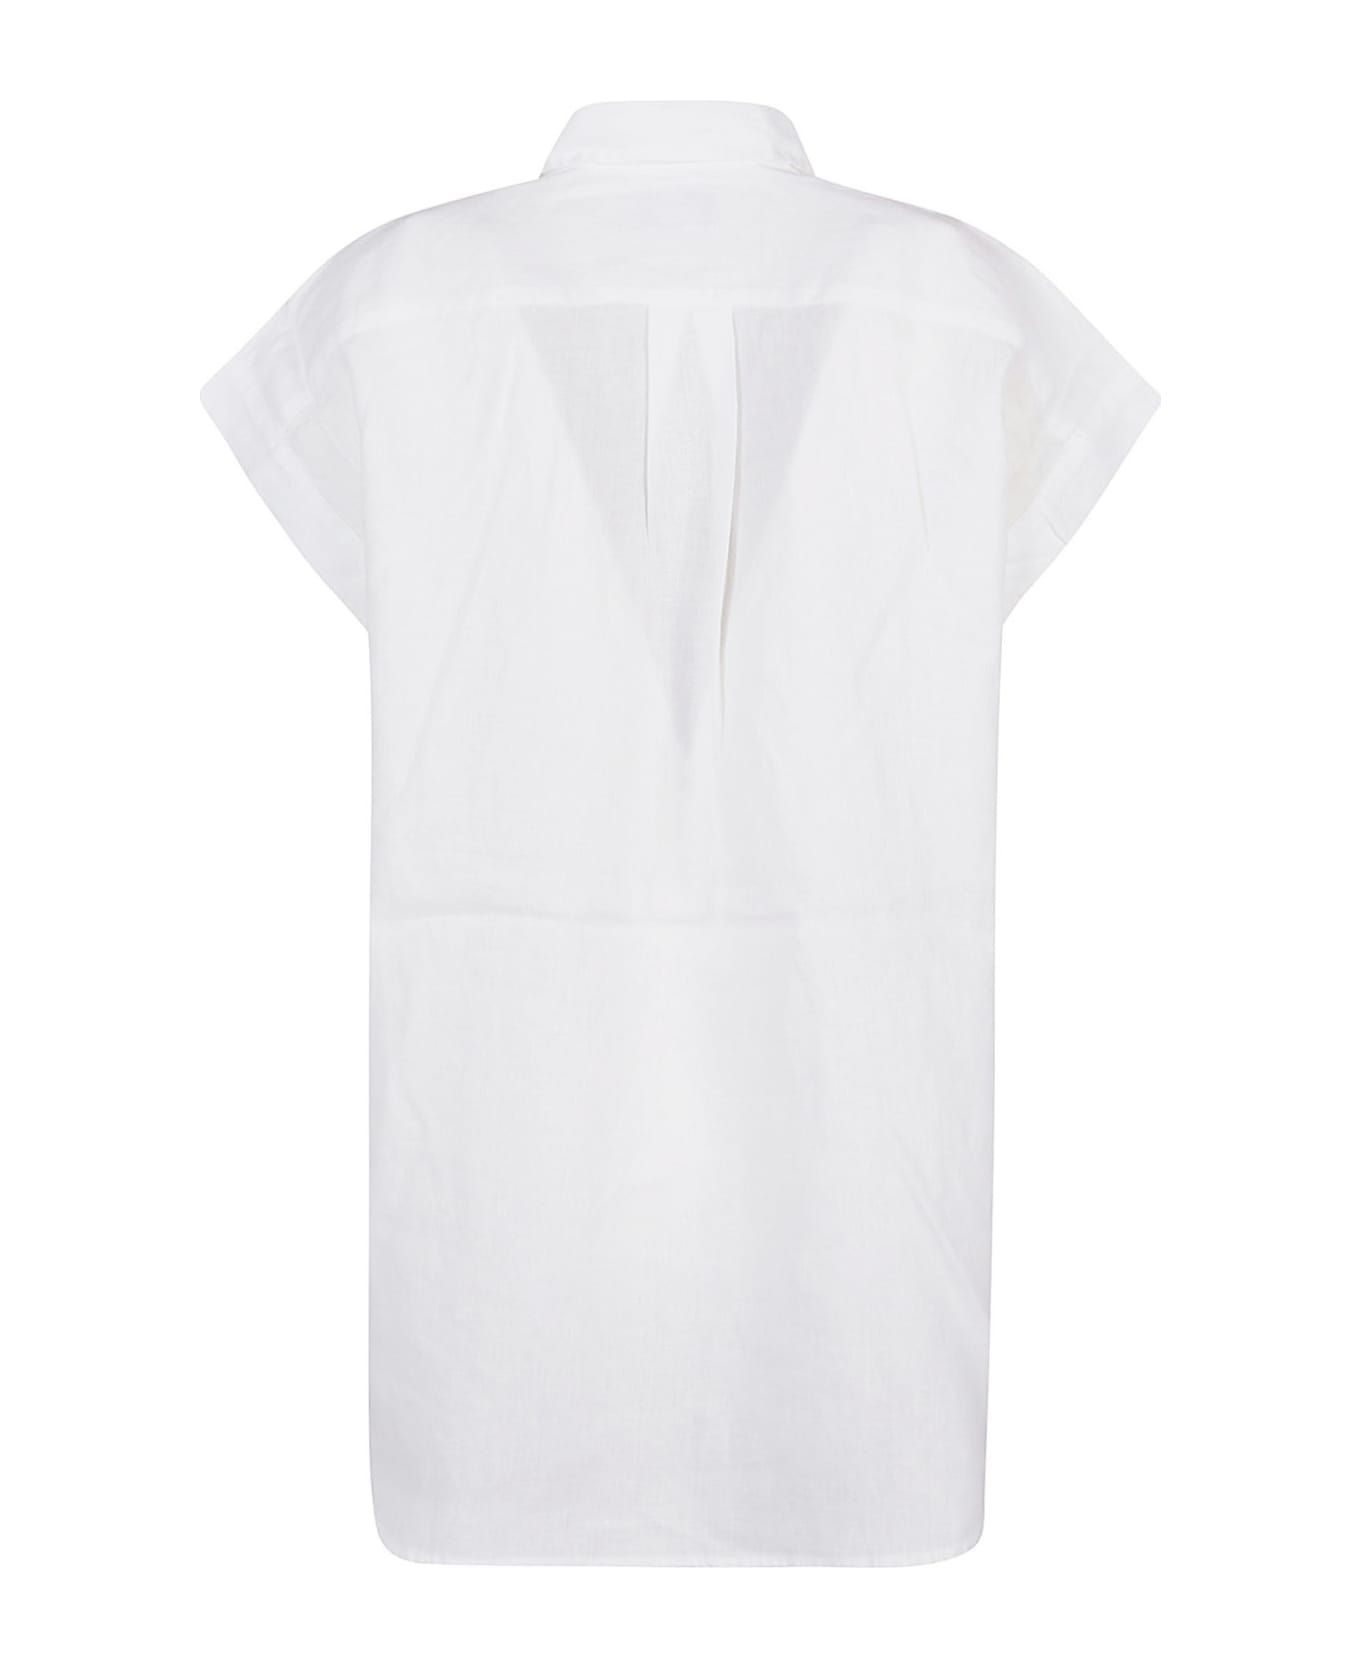 Polo Ralph Lauren Short Sleeve Button Front Shirt - White